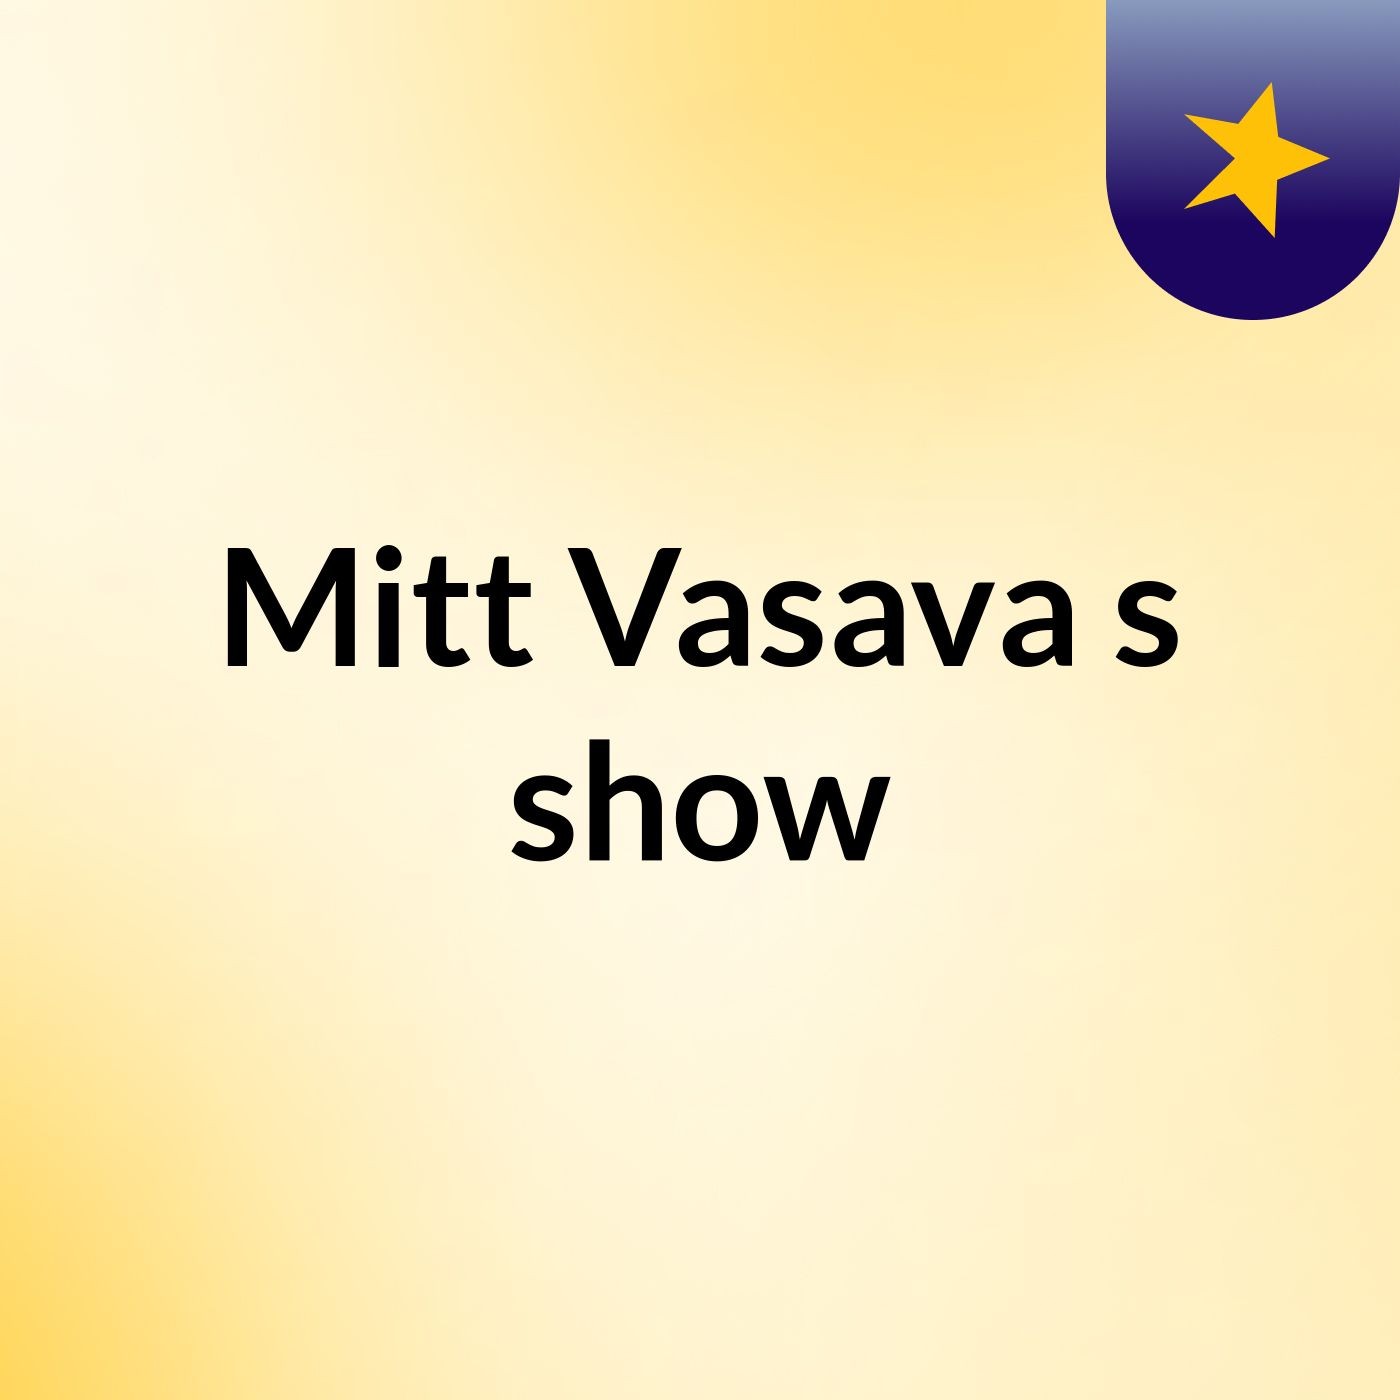 Mitt Vasava's show